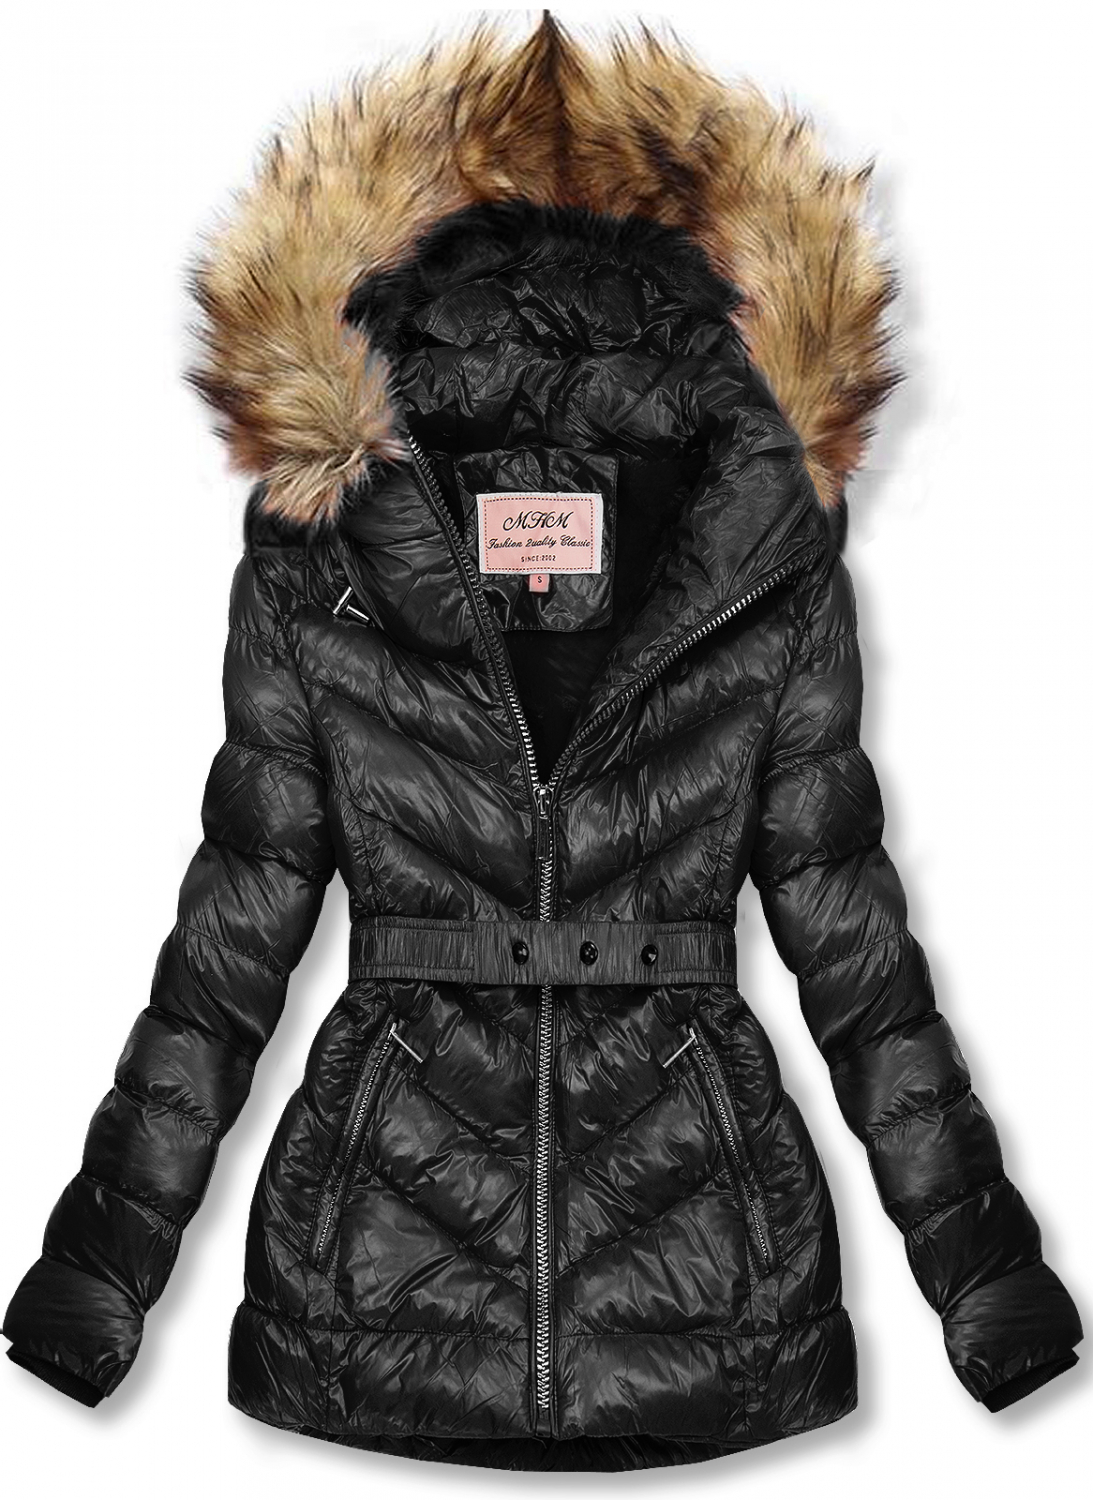 Čierna zimná krátka bunda s hnedou kožušinou.
- neodopínateľná kapucňa
- odnímateľná kožušina
- zapínanie na zips
- v prednej časti 2 vrecká 
- vnútro zateplené plyšom
- s opaskom
- materiál: 100% polyester, podšívka: 100% polyester